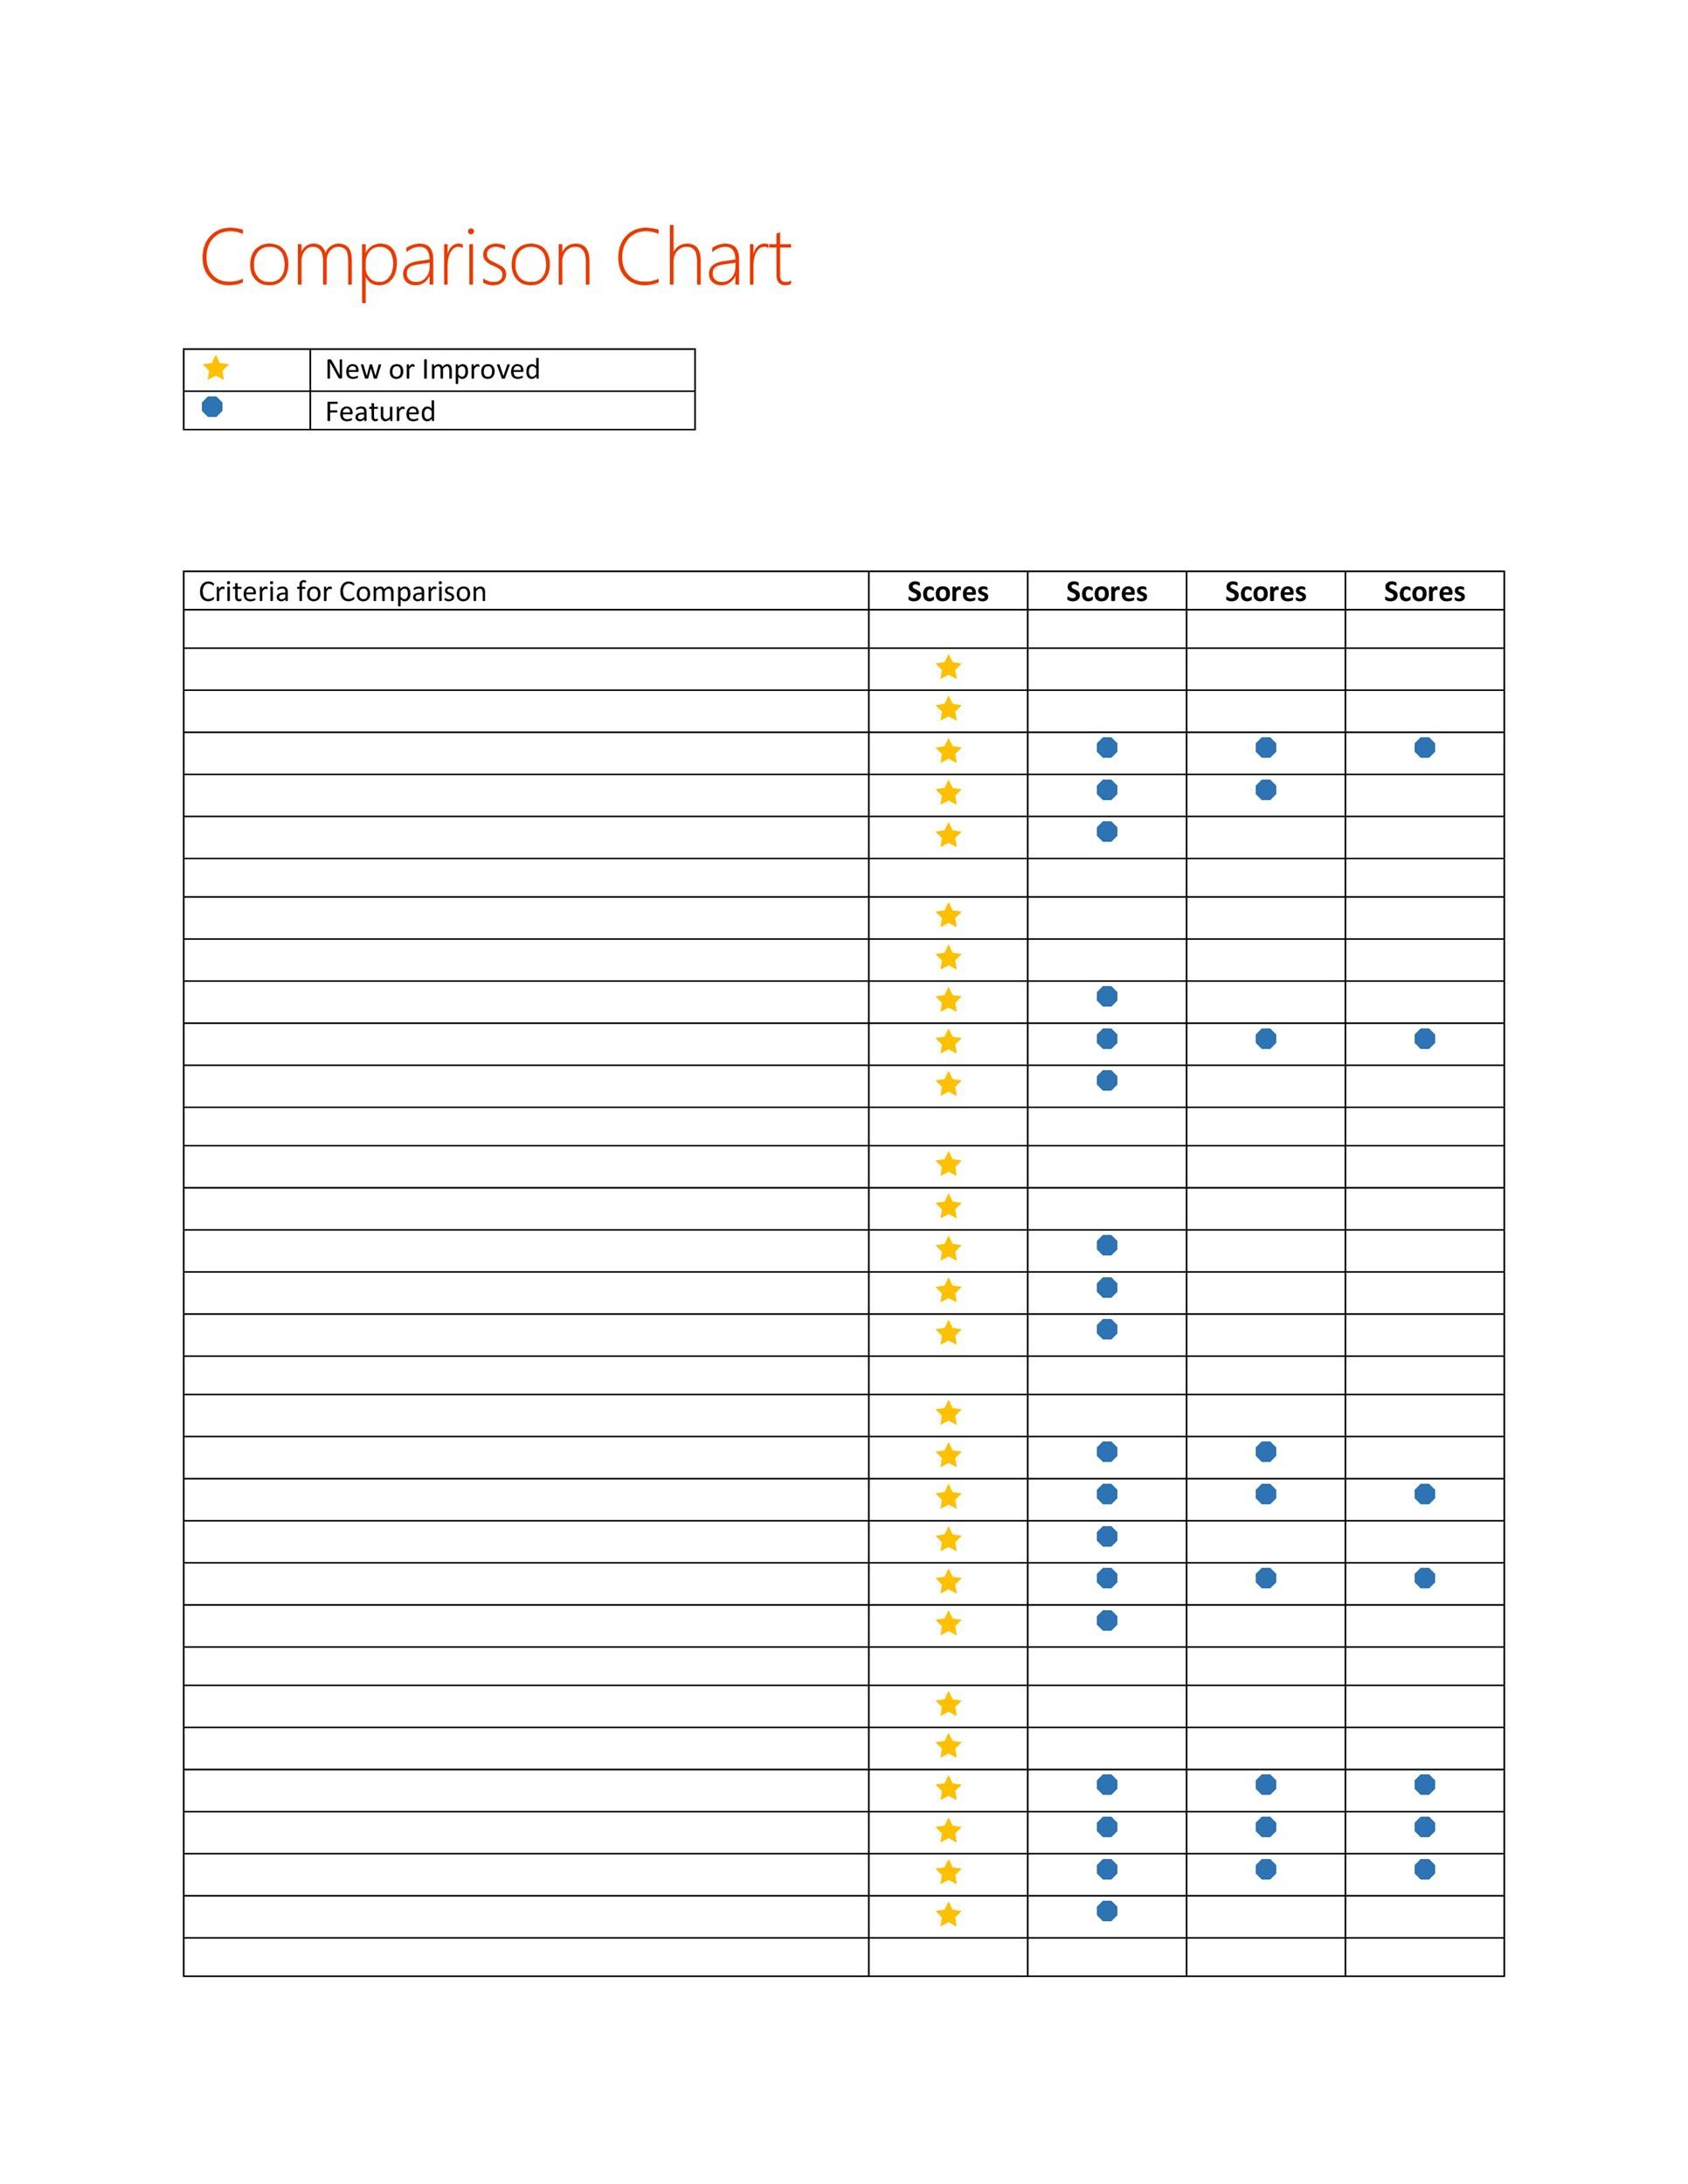 comparison-chart-excel-template